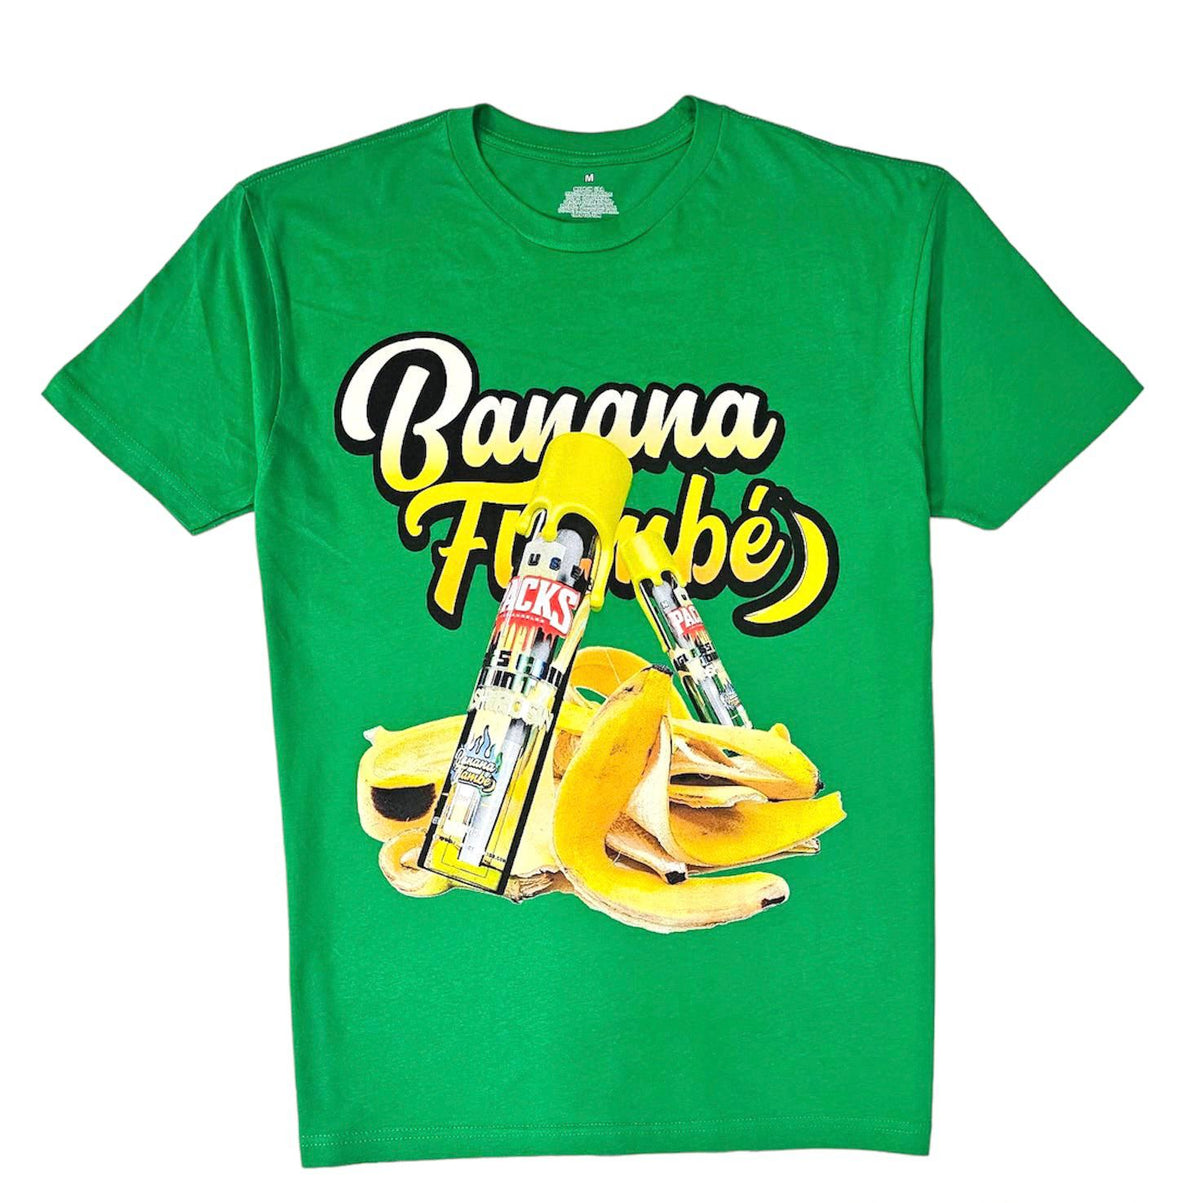 Banana Flambe Tee - Green